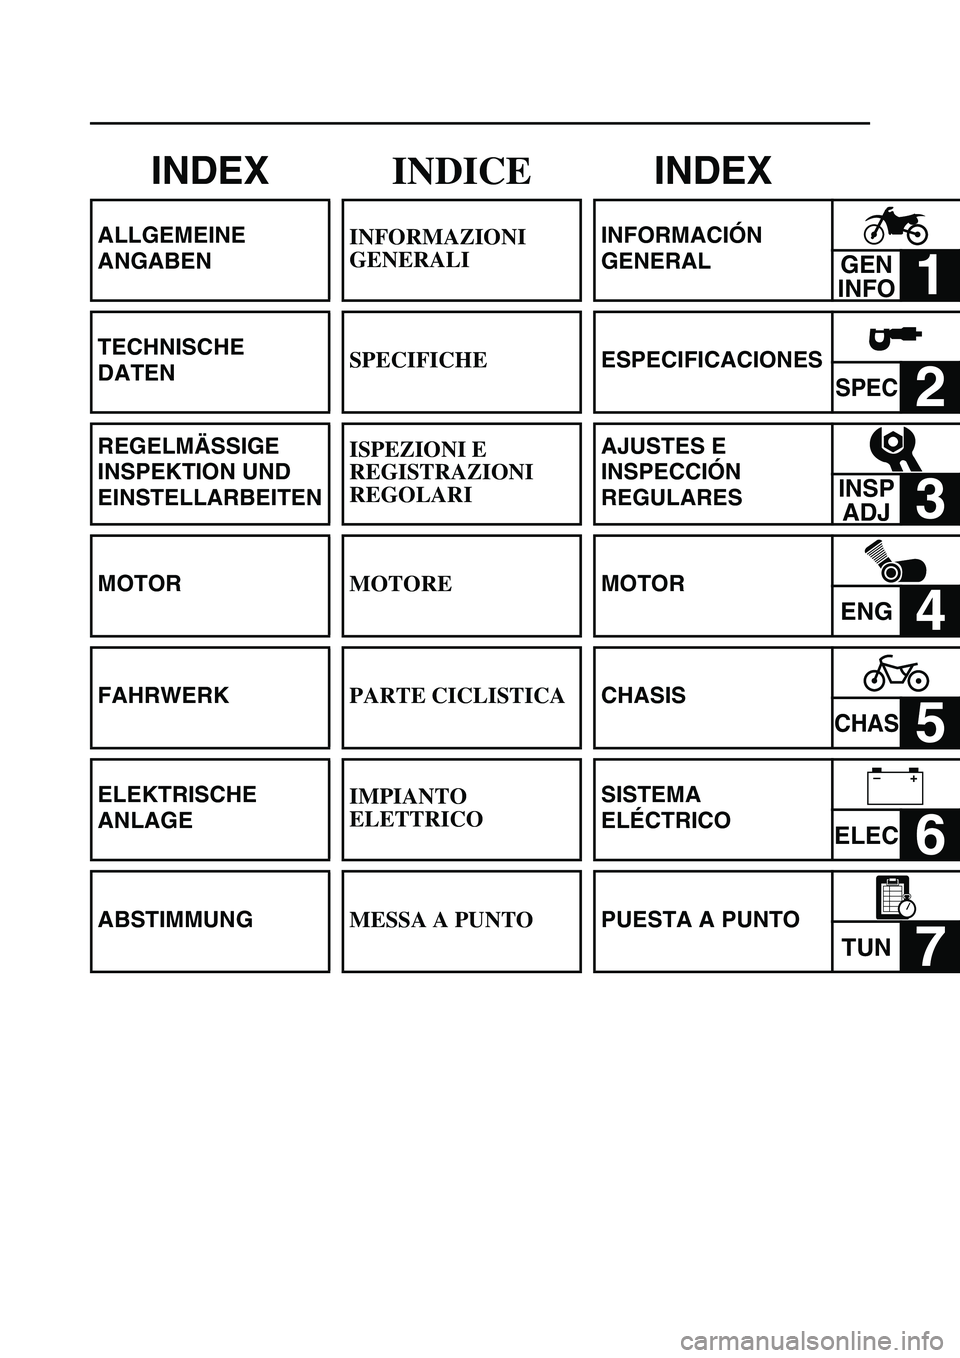 YAMAHA WR 250F 2004  Manuale de Empleo (in Spanish) INDEX
ALLGEMEINE 
ANGABEN
TECHNISCHE 
DATEN
REGELMÄSSIGE 
INSPEKTION UND 
EINSTELLARBEITEN
MOTOR
FAHRWERK
ELEKTRISCHE 
ANLAGE
ABSTIMMUNG
INDICE
INFORMAZIONI 
GENERALI
SPECIFICHE
ISPEZIONI E 
REGISTRA